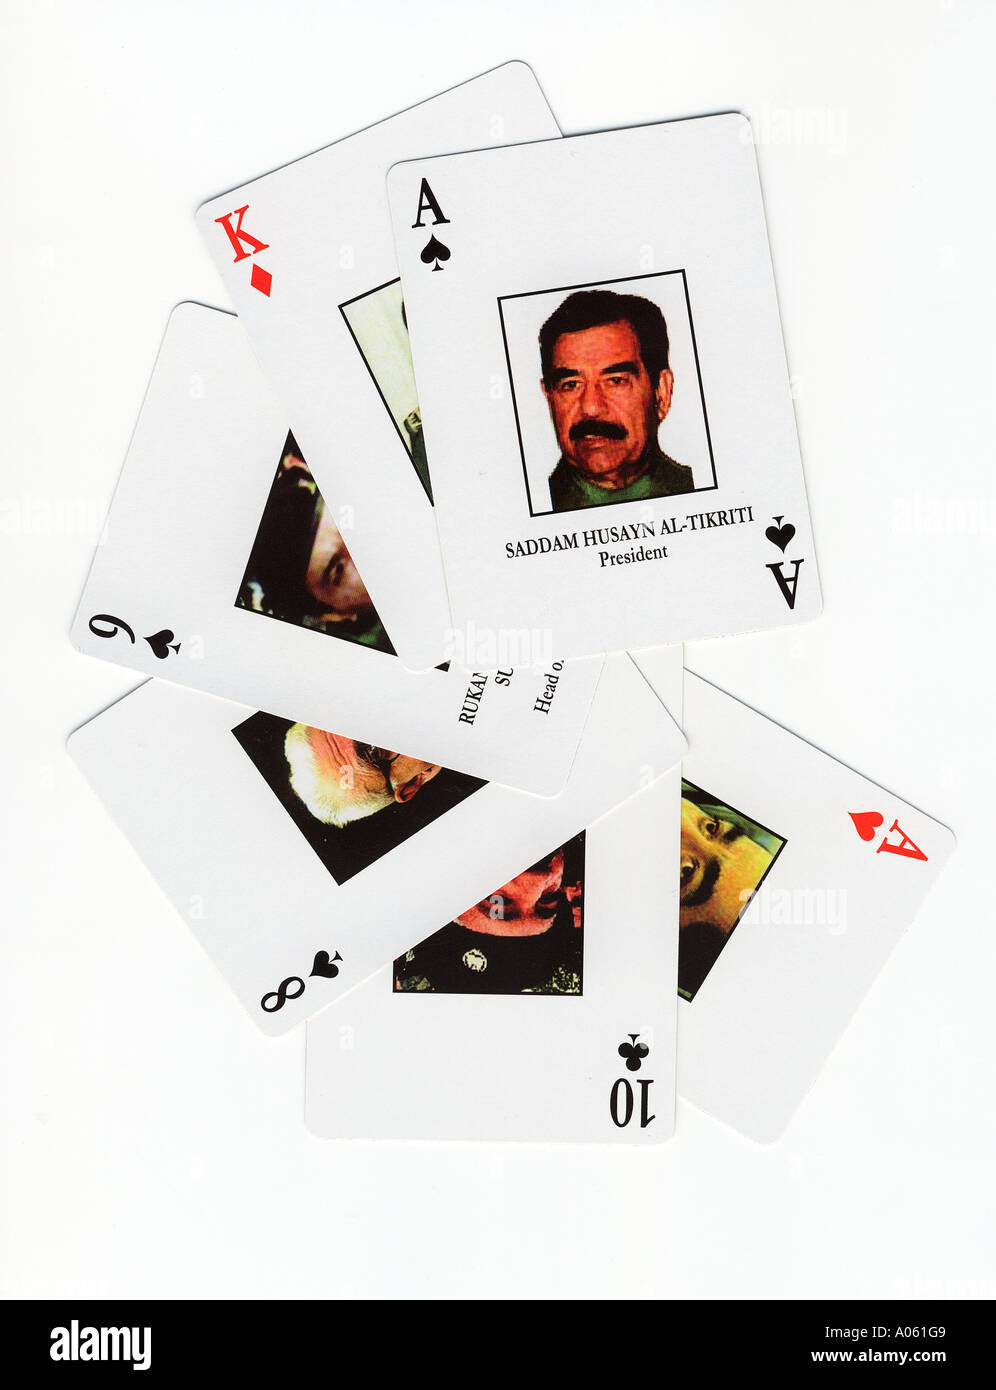 Carte da gioco sviluppate dagli Stati Uniti Agenzia di intelligence per la difesa per aiutare le truppe a identificare i membri più ricercati del governo del presidente Saddam Hussein Foto Stock